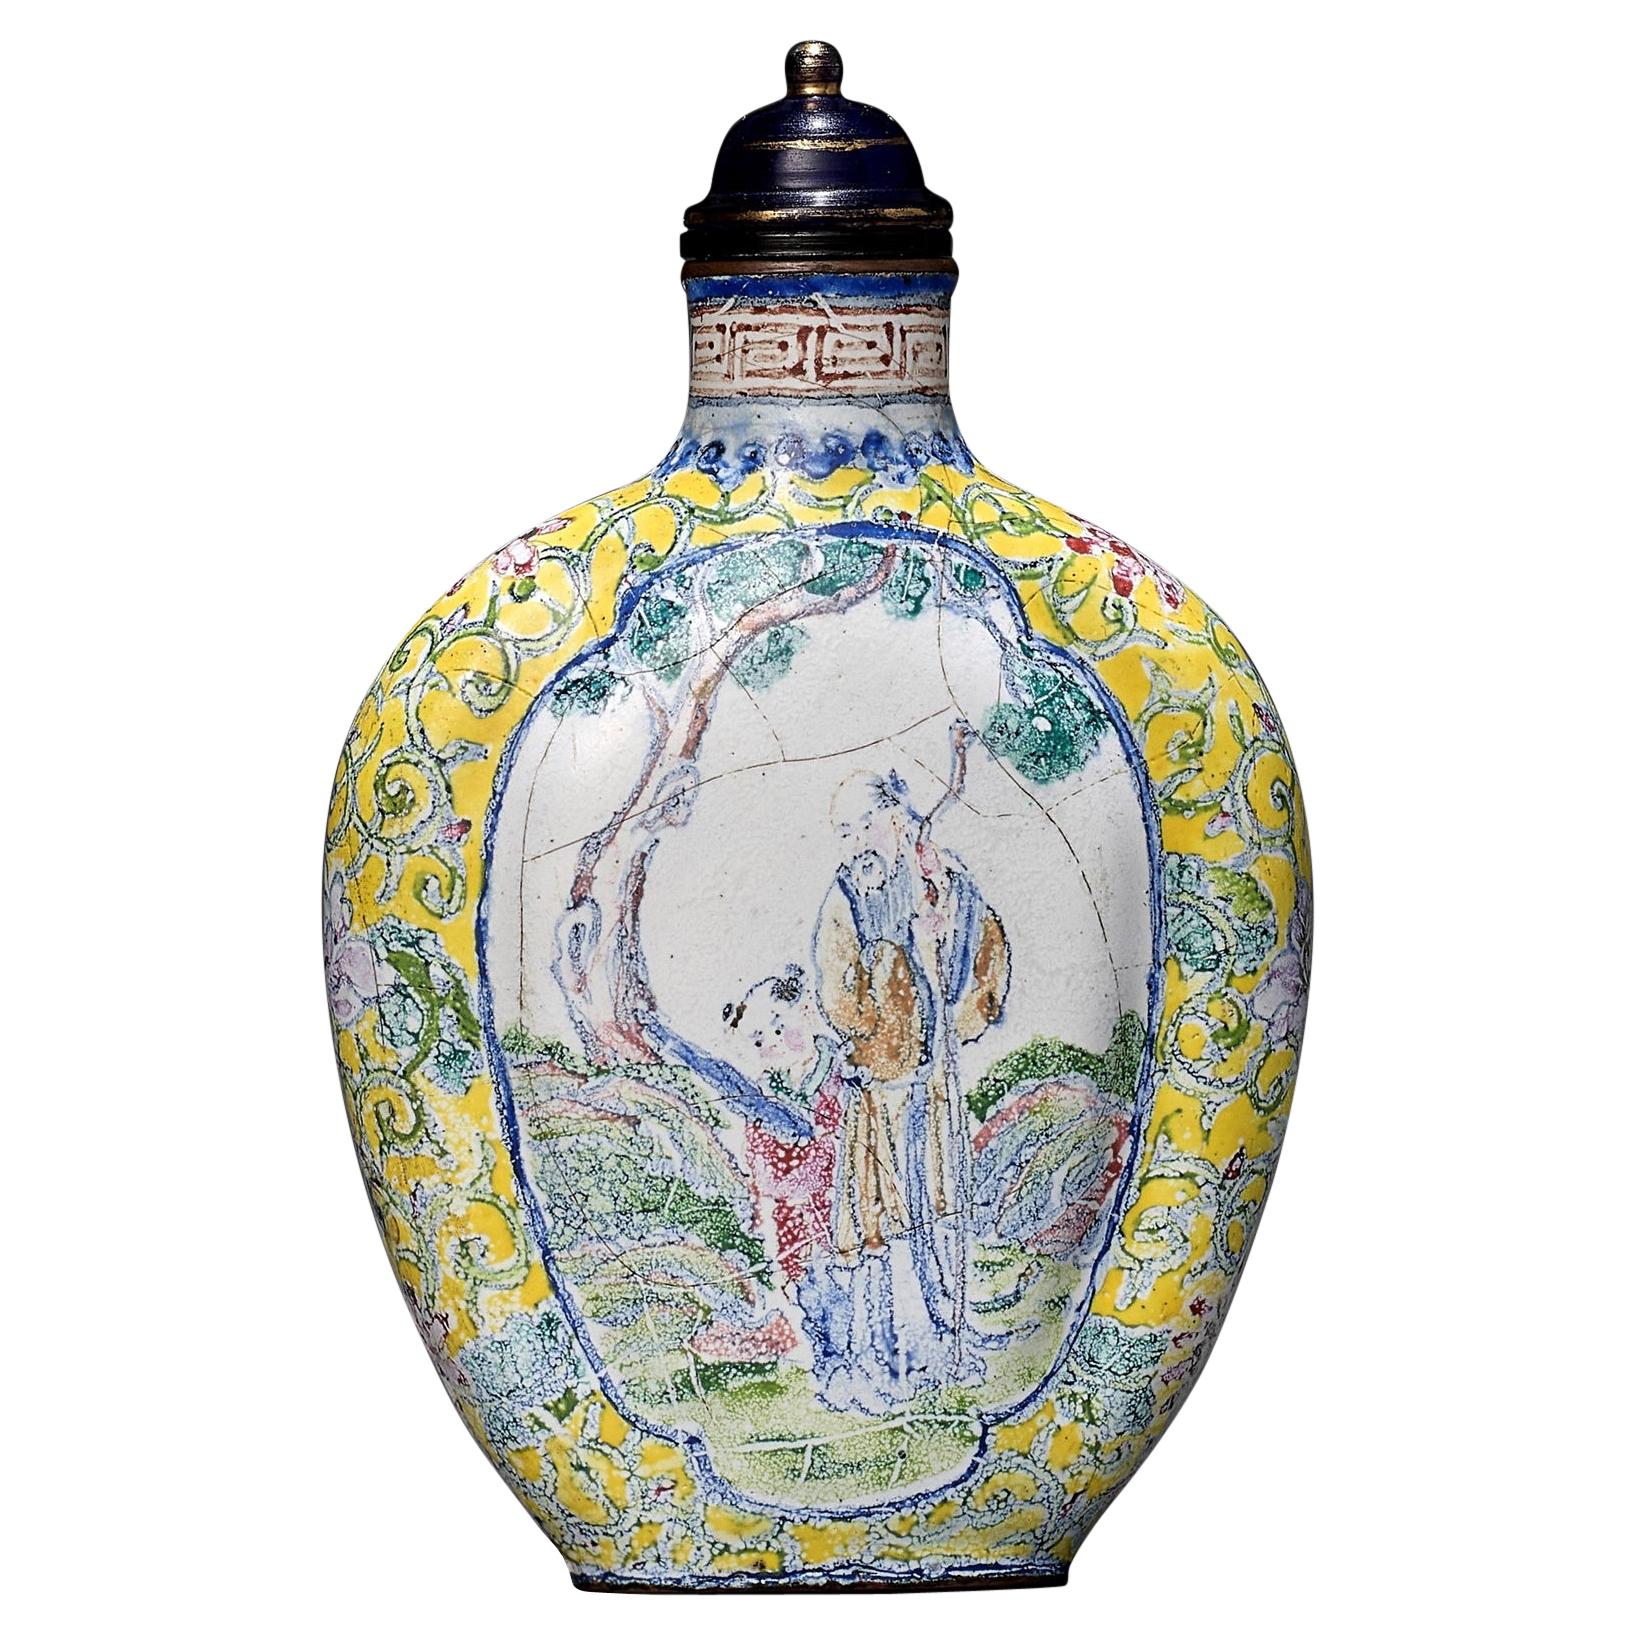 Canton Enamel Snuff Bottle, China, Qing Dynasty, 1644-1912